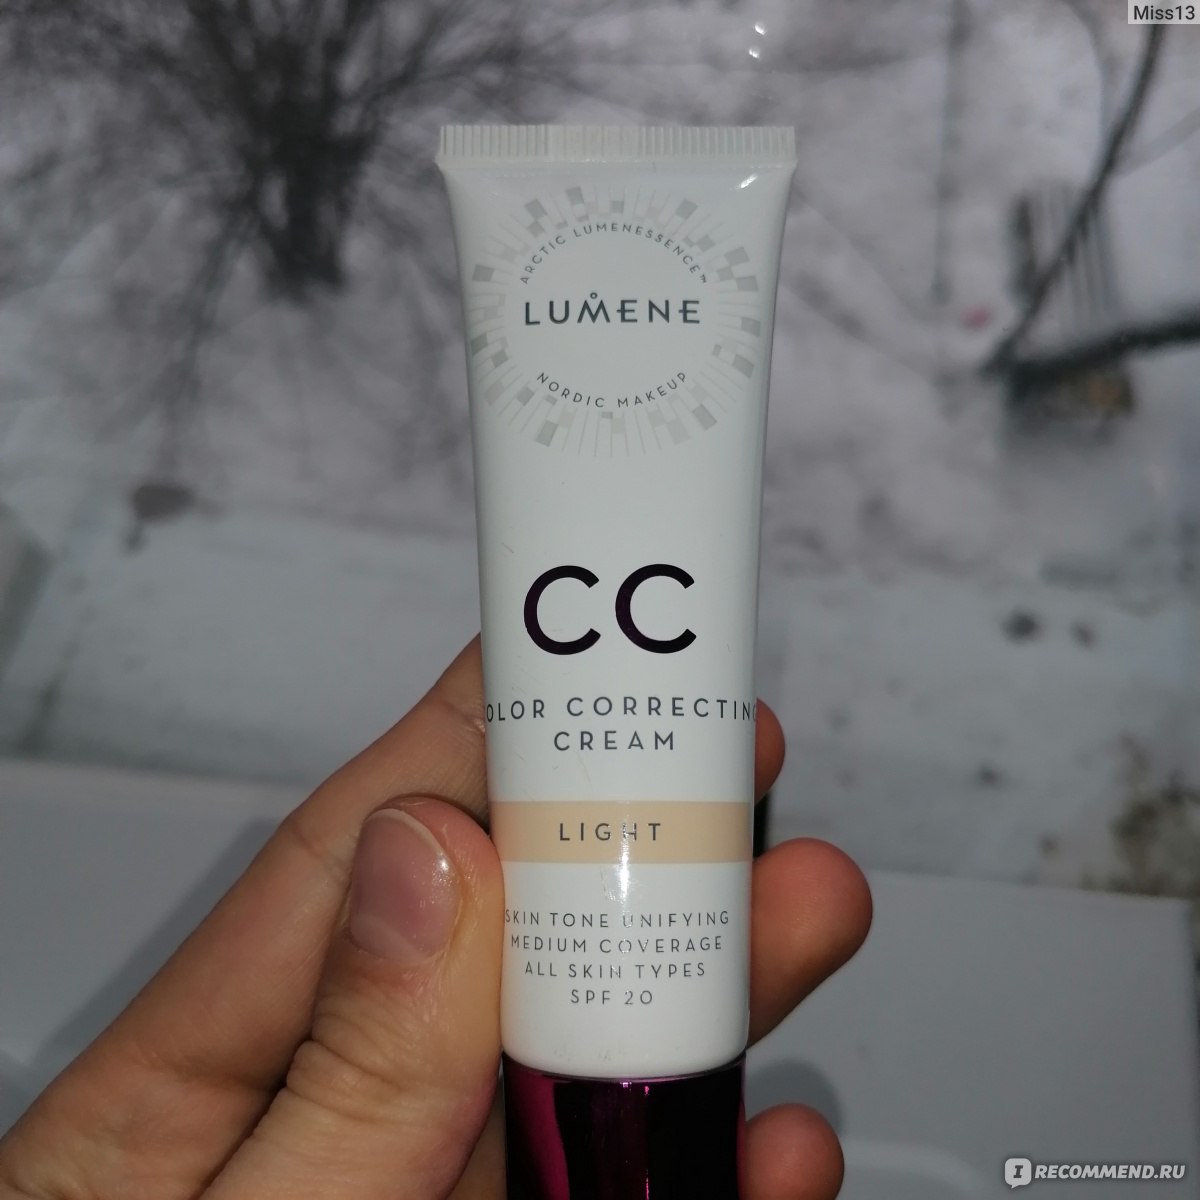 Lumene cc Color Correcting Cream